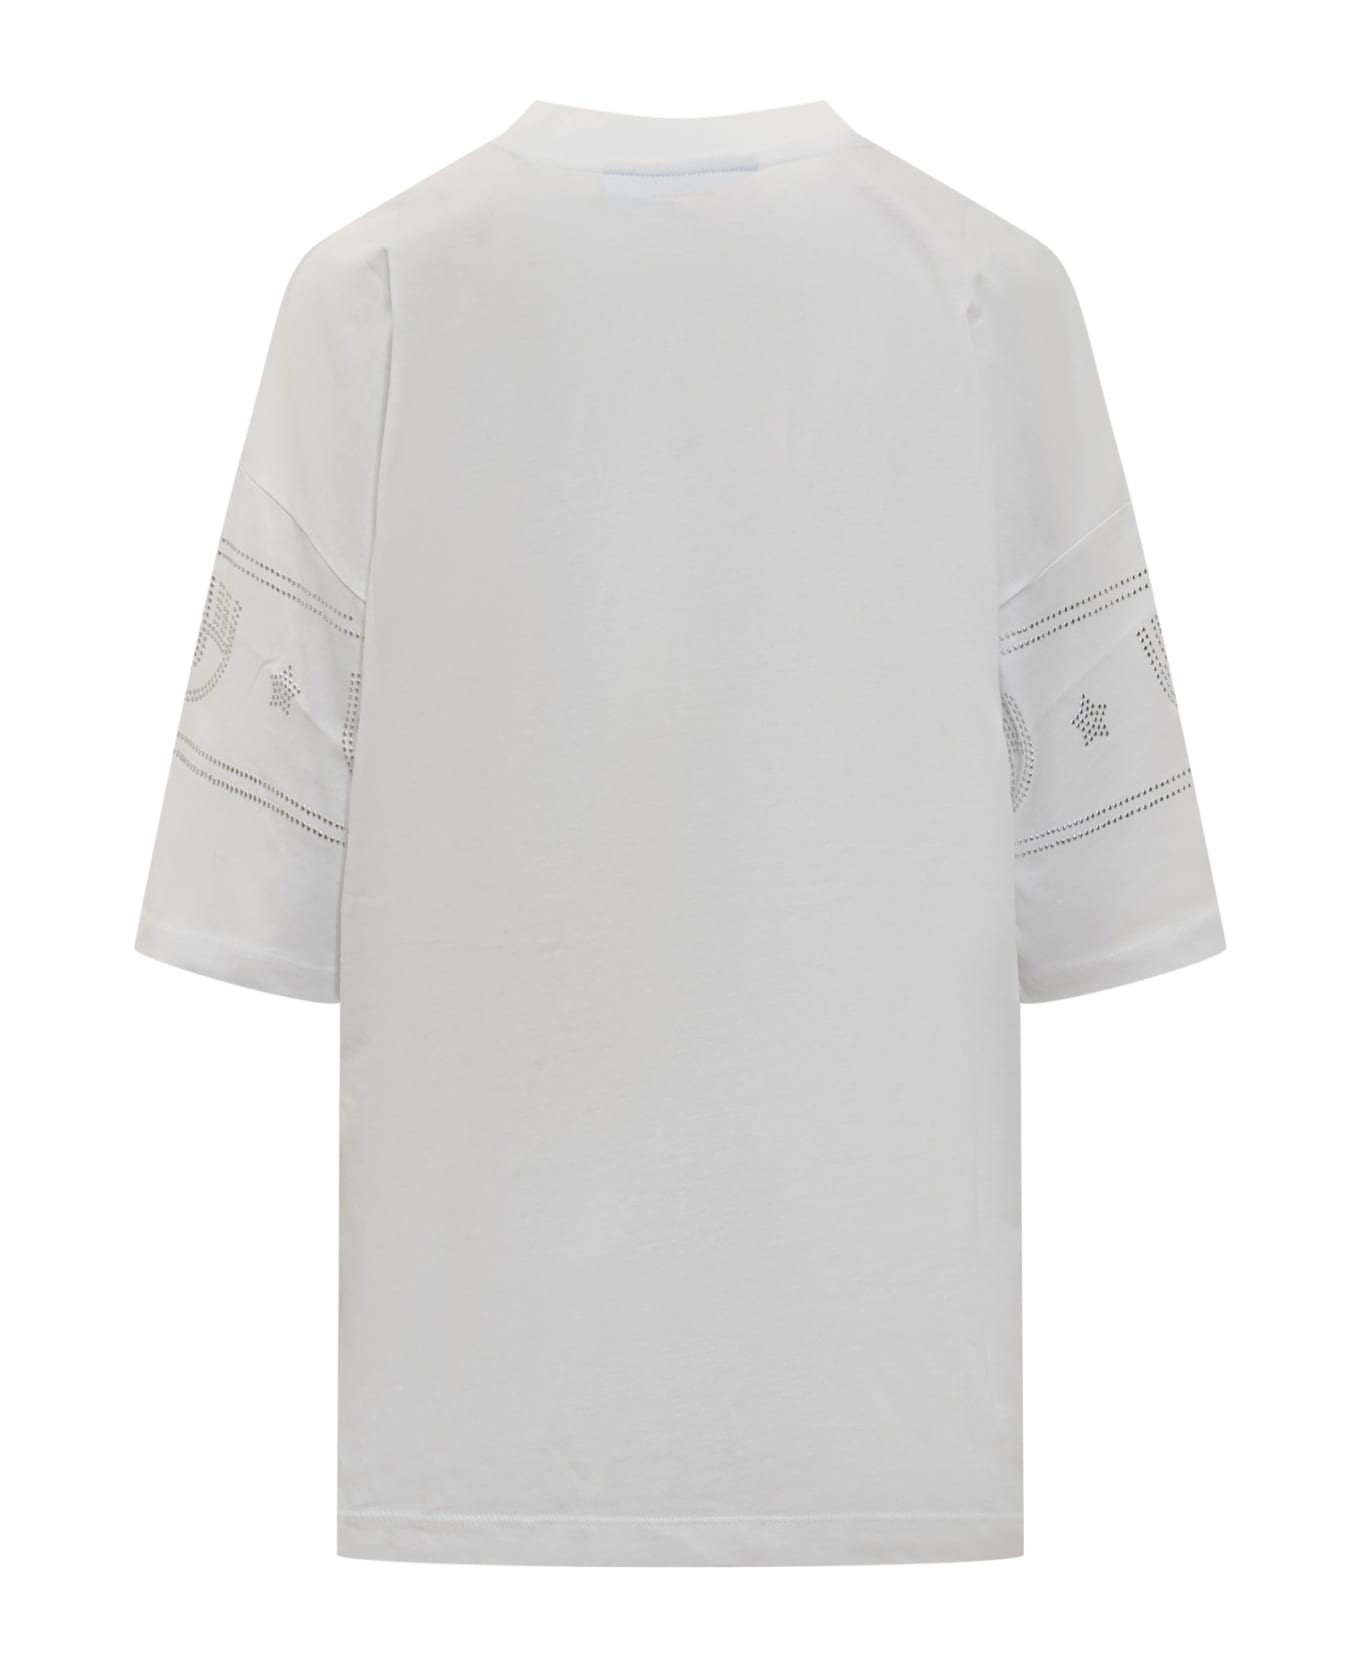 Chiara Ferragni Logomania 640 T-shirt - White Tシャツ